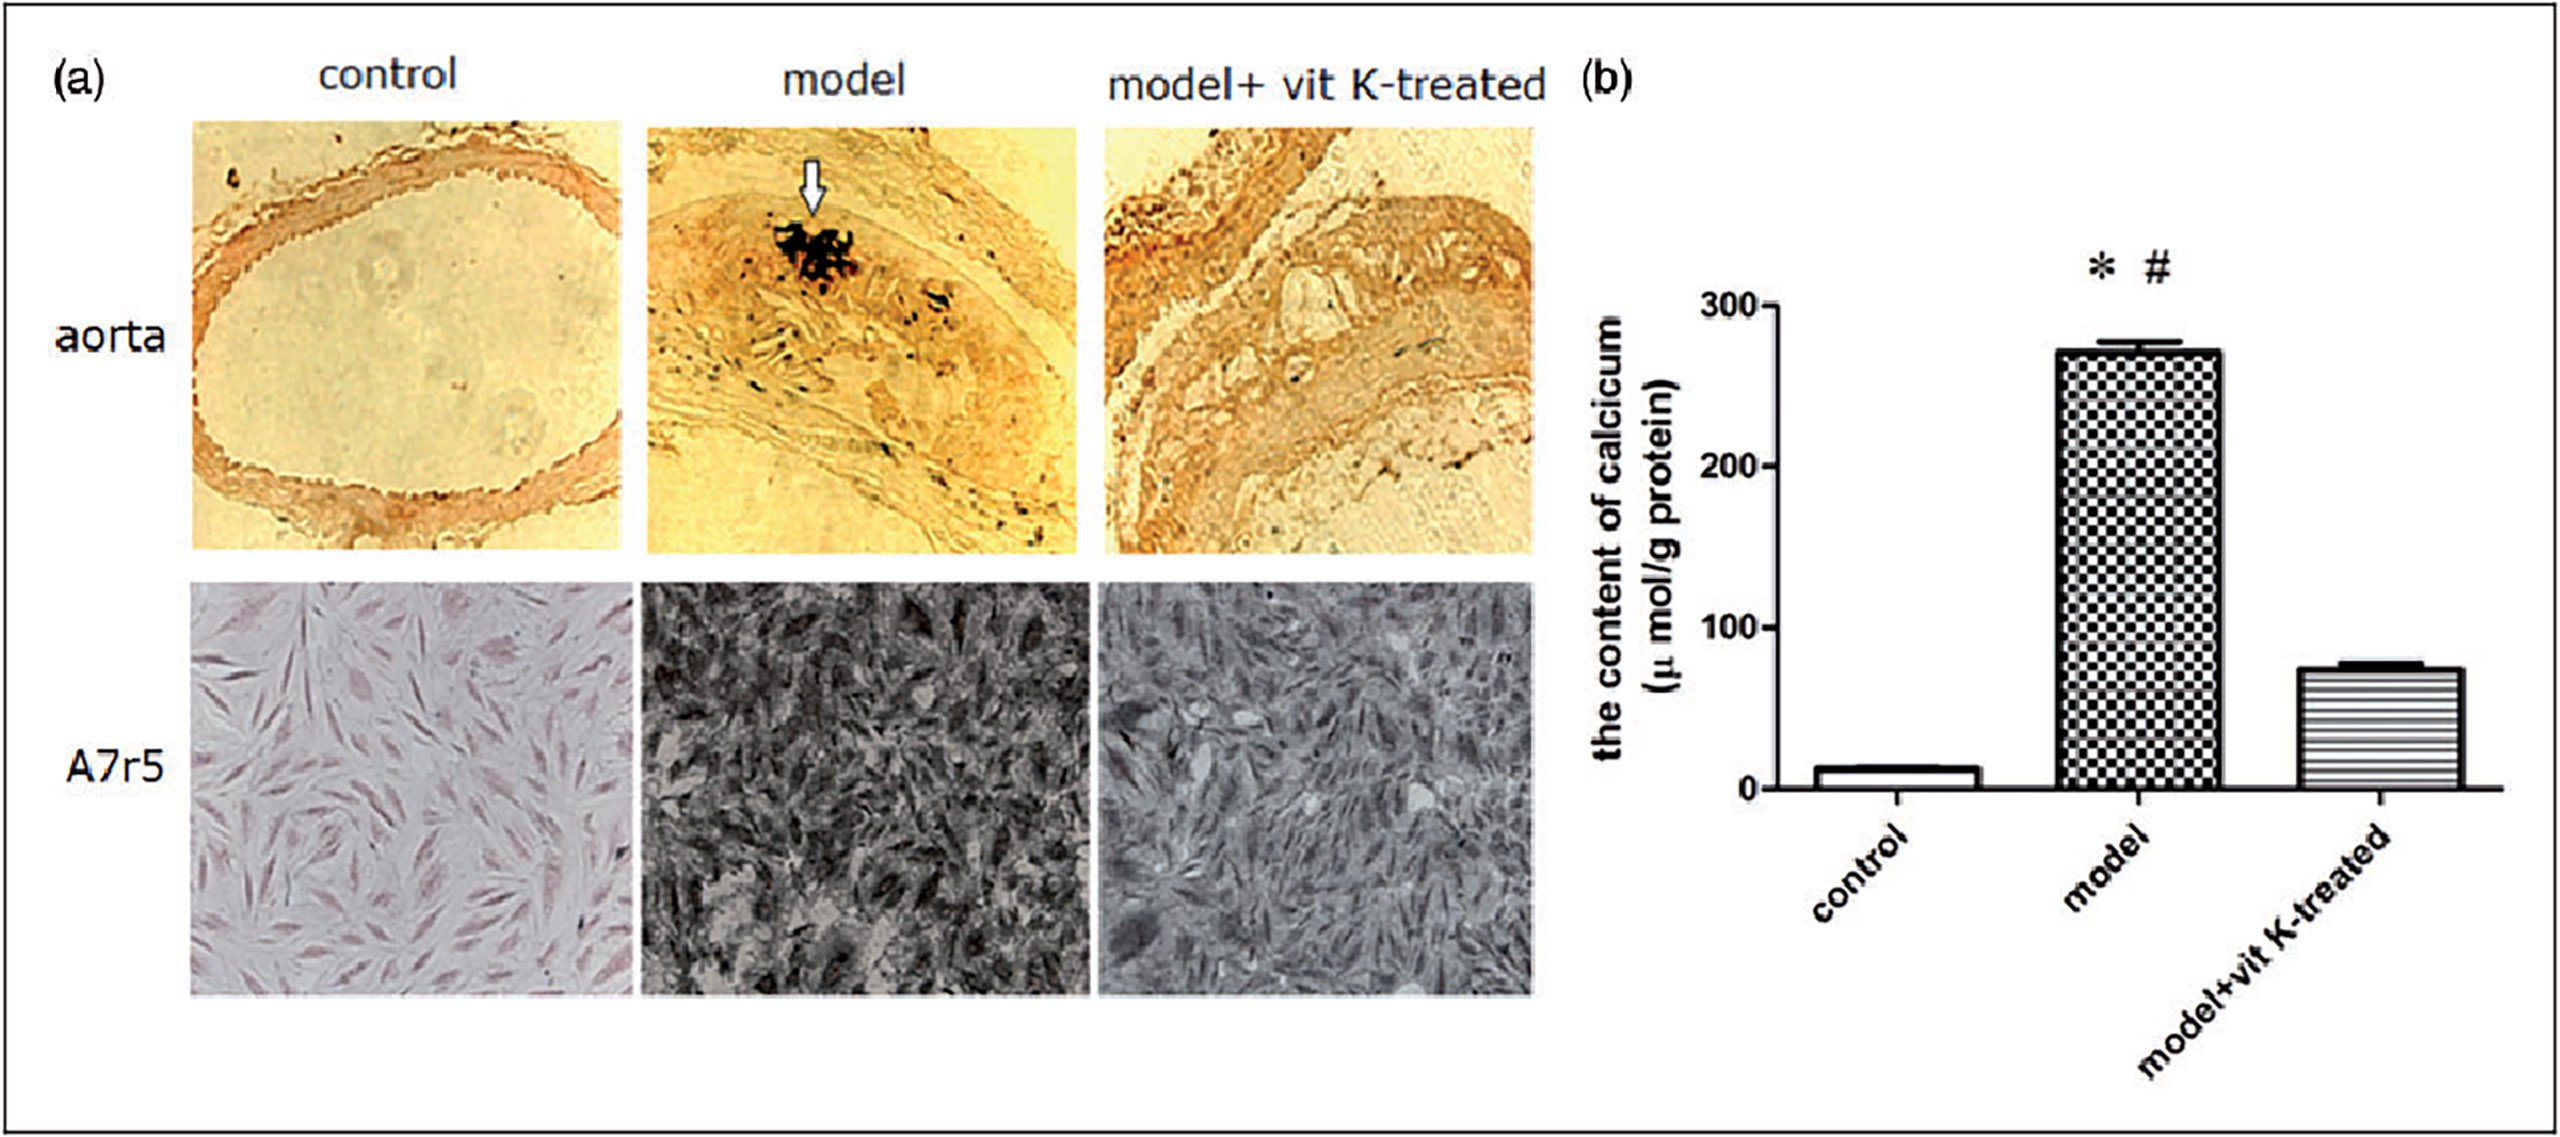 La vitamine K2 prévient la calcification des artères - ici sur un modèle animal de souris